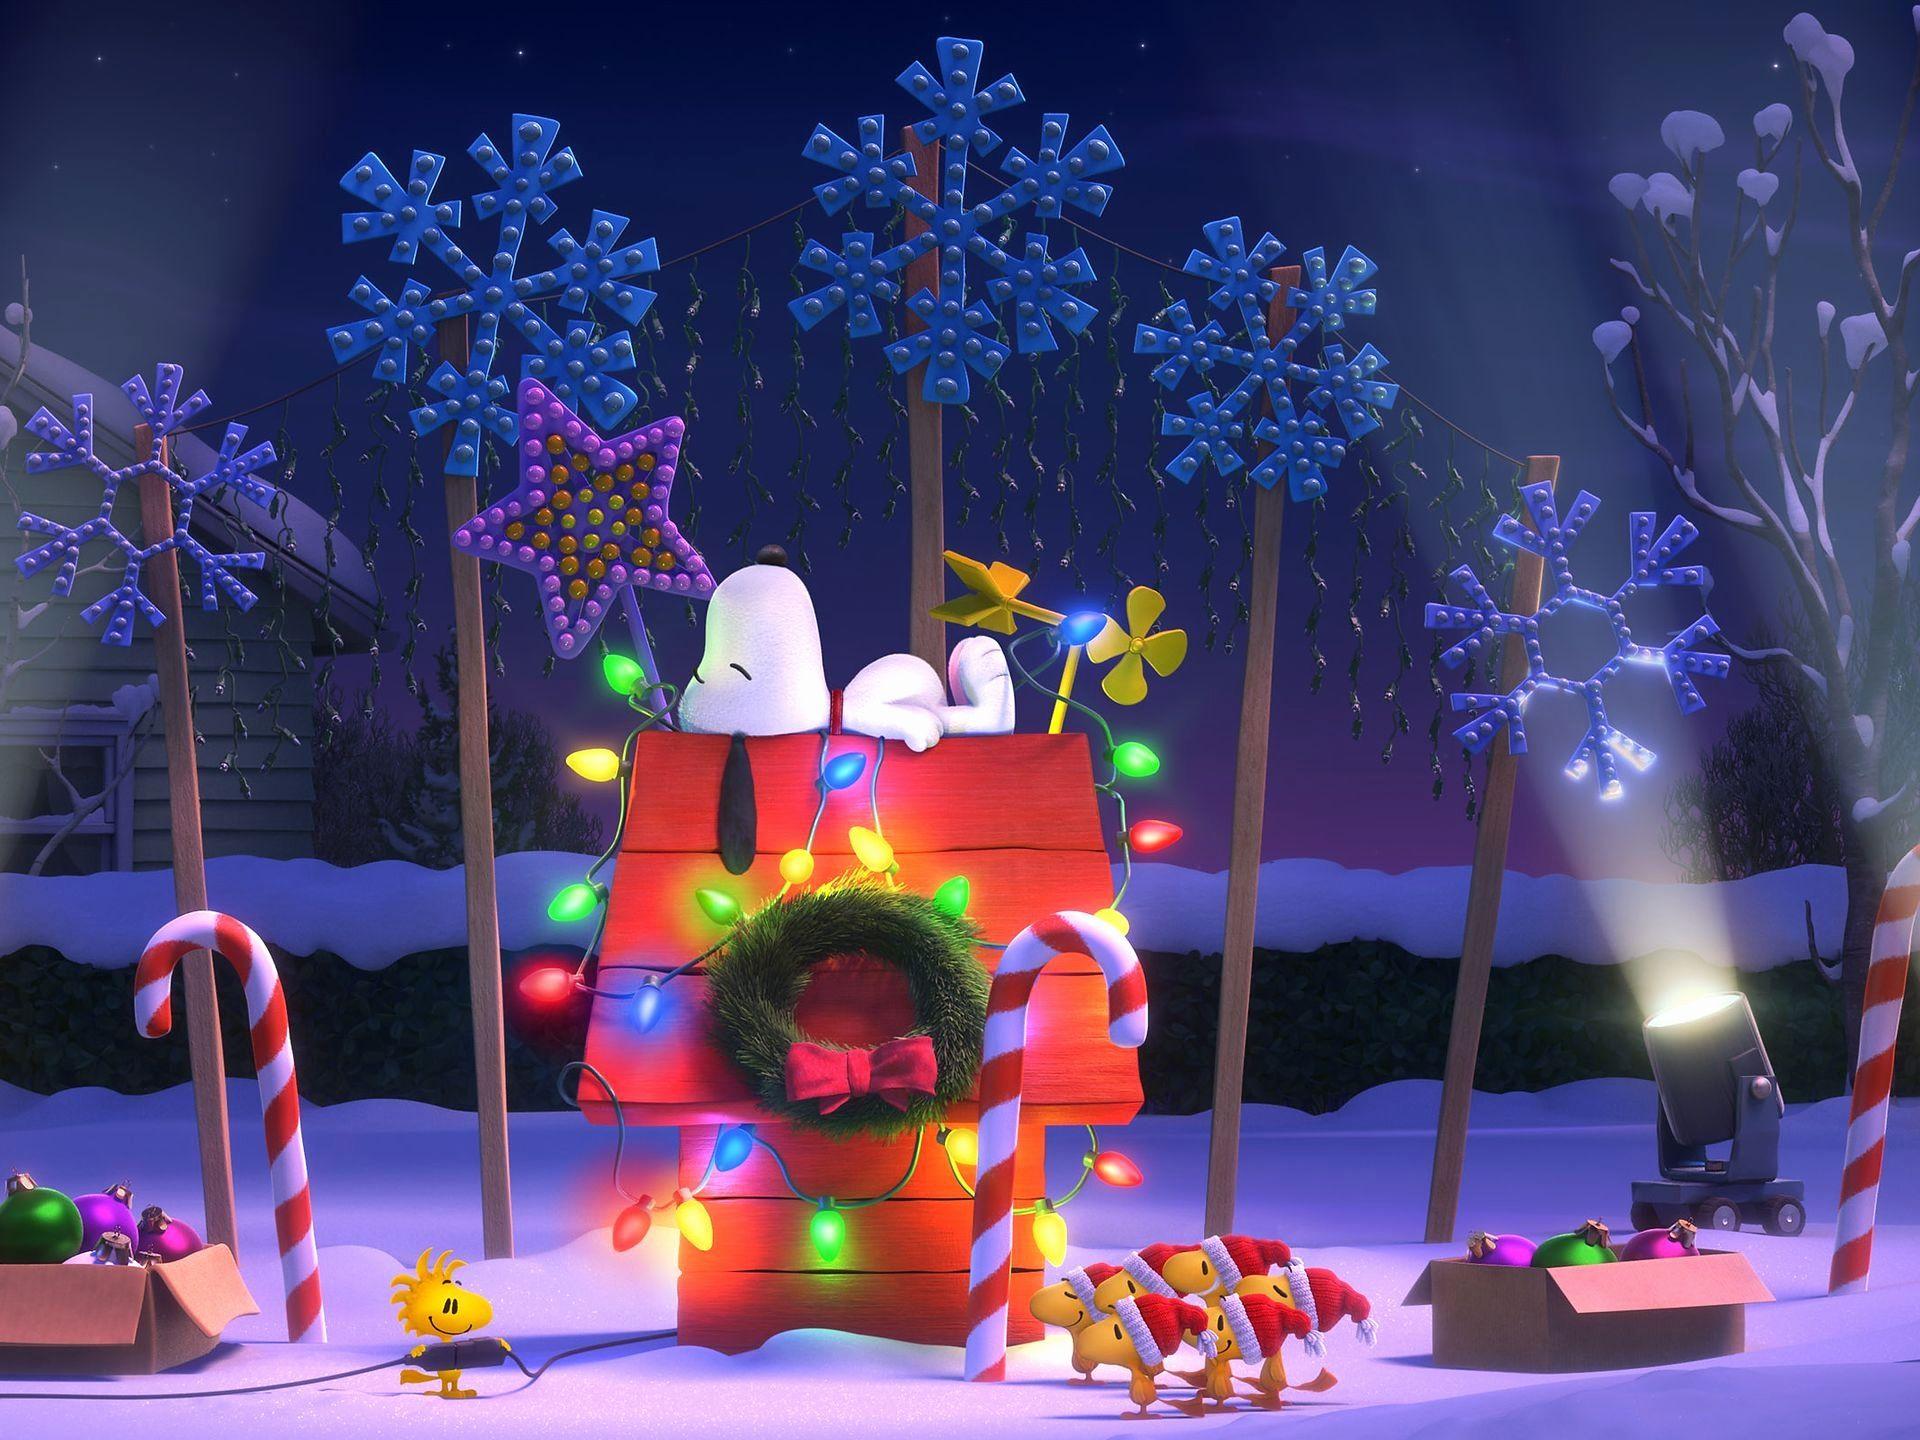 Hướng dẫn tải Snoopy background Christmas Dễ dàng và nhanh chóng